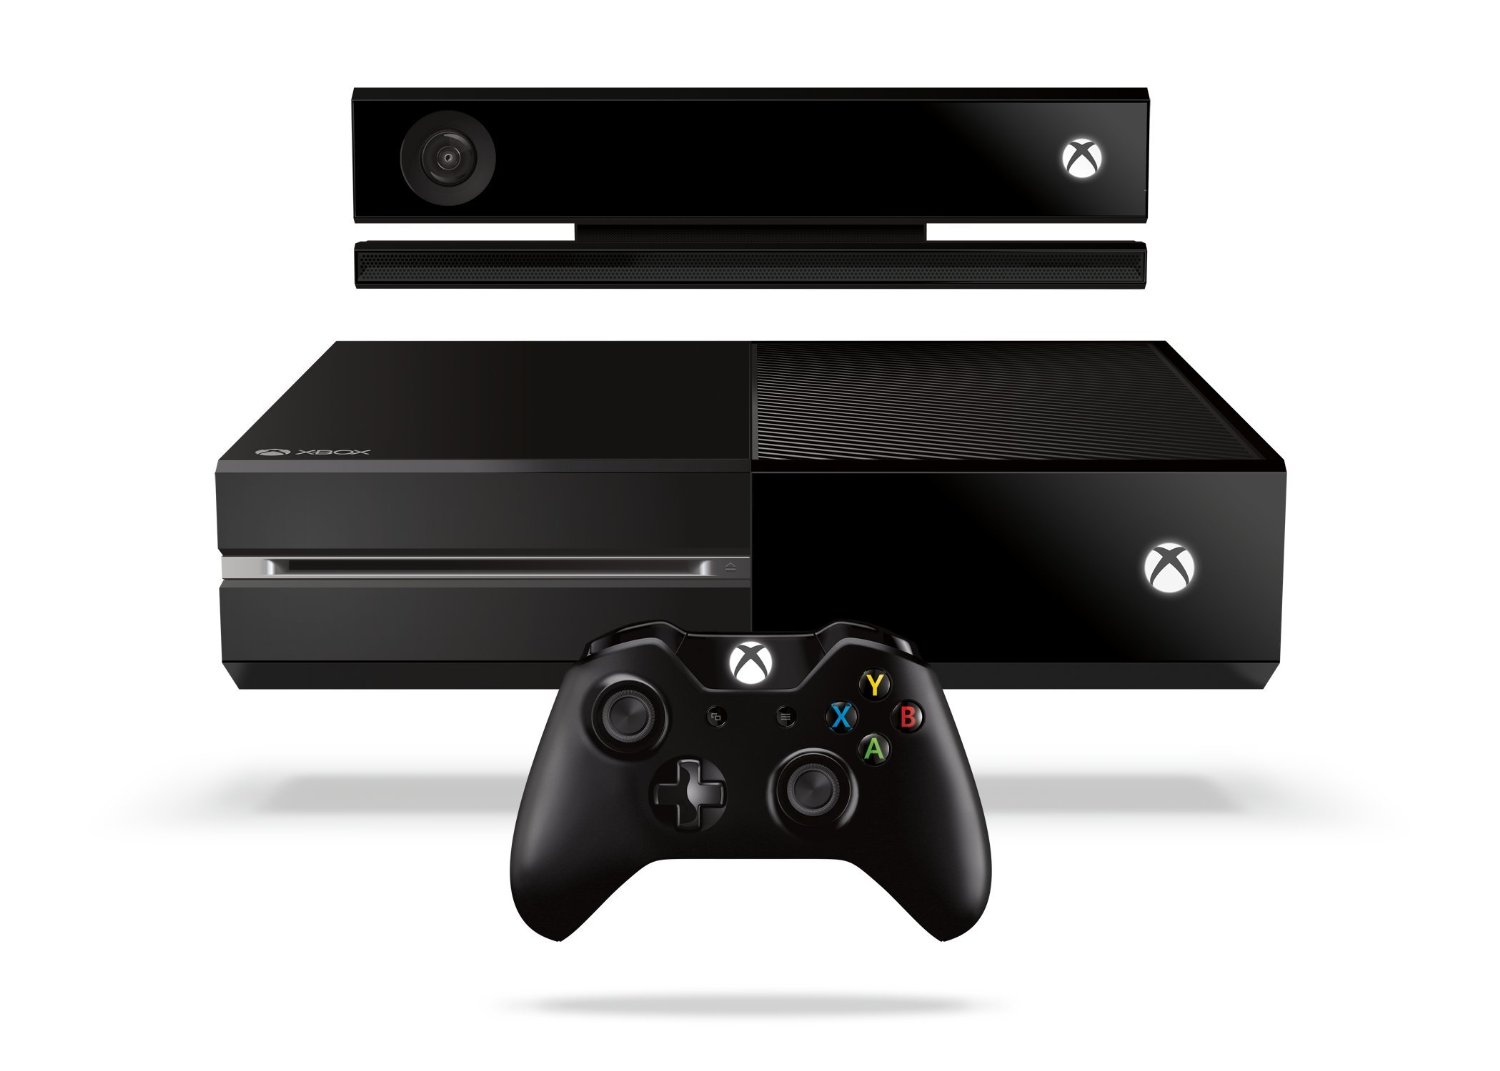 Microsoft Xbox One Konsole 500GB inkl. Kinect Sensor und Wireless Controller - Schwarz